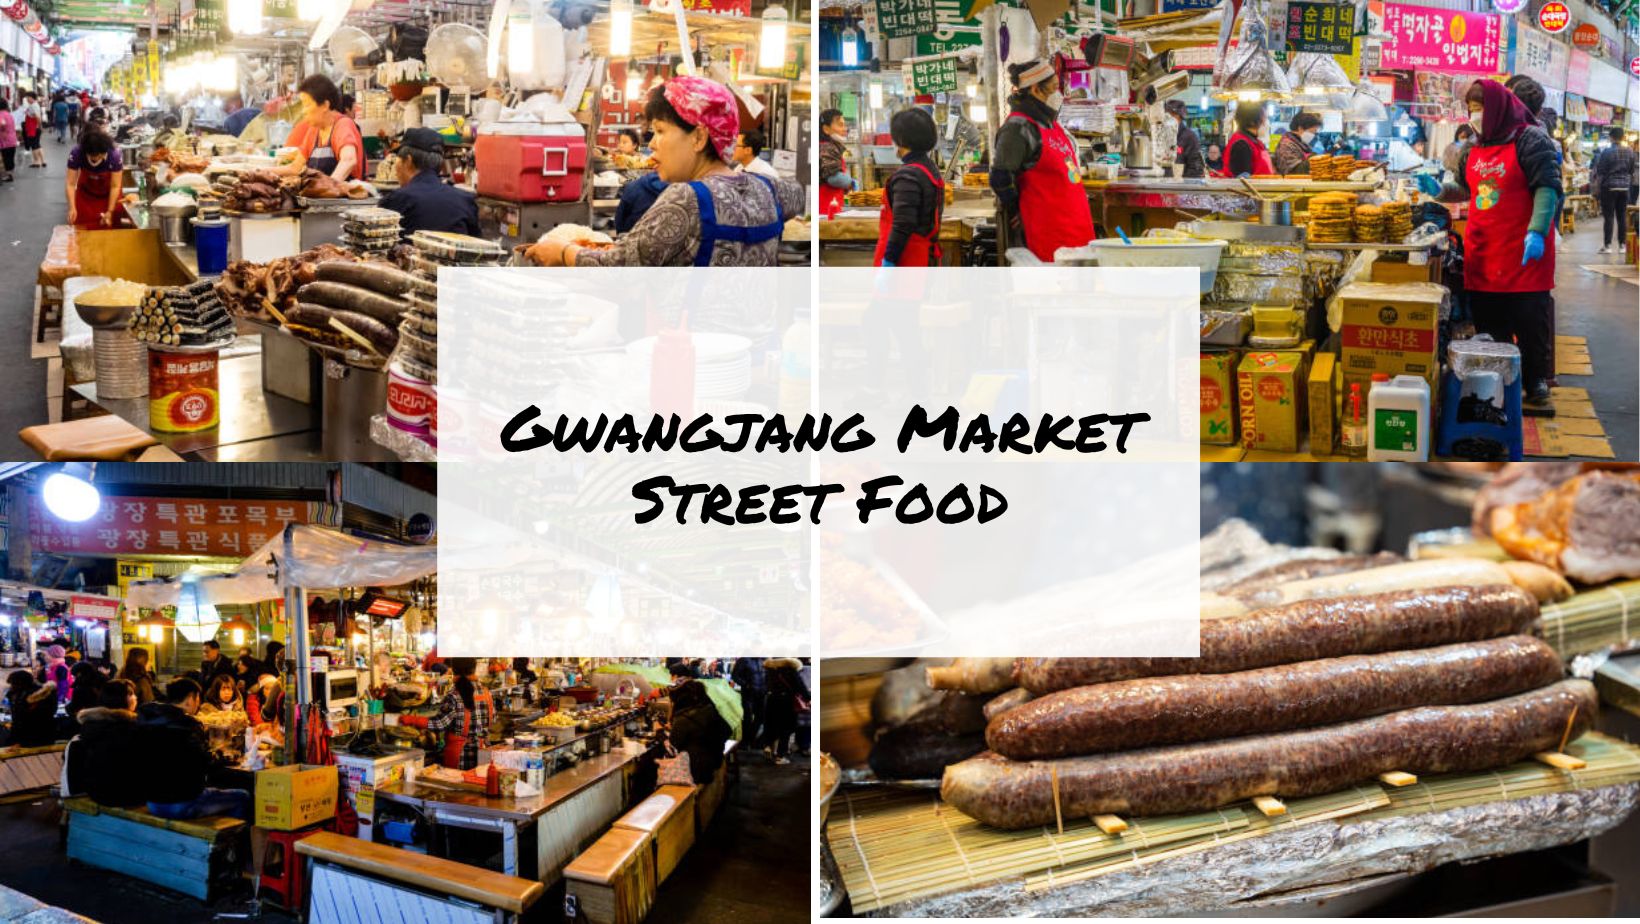 Gwangjang Market Street Food